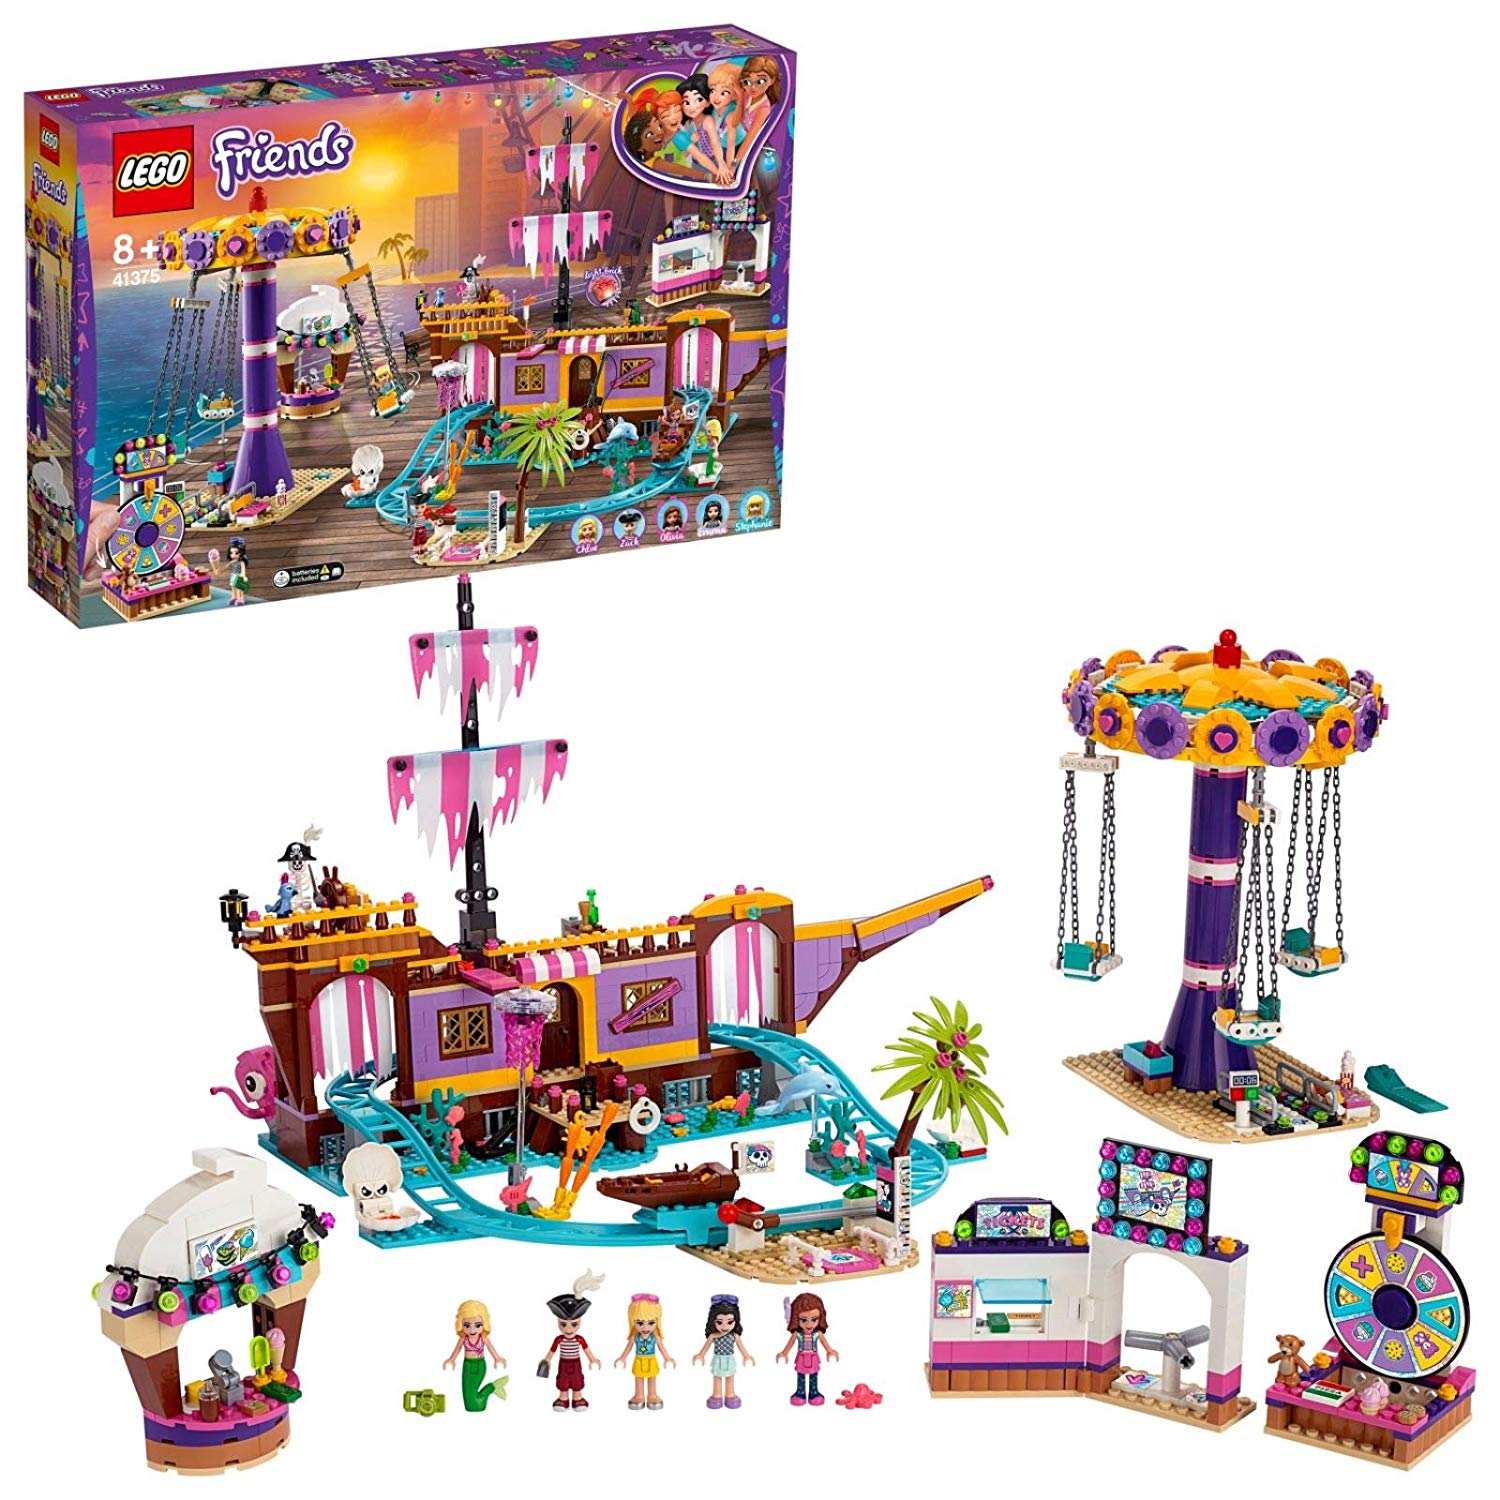 Lego 41375 - Friends Amusement Park Of Heartlake City Building Set